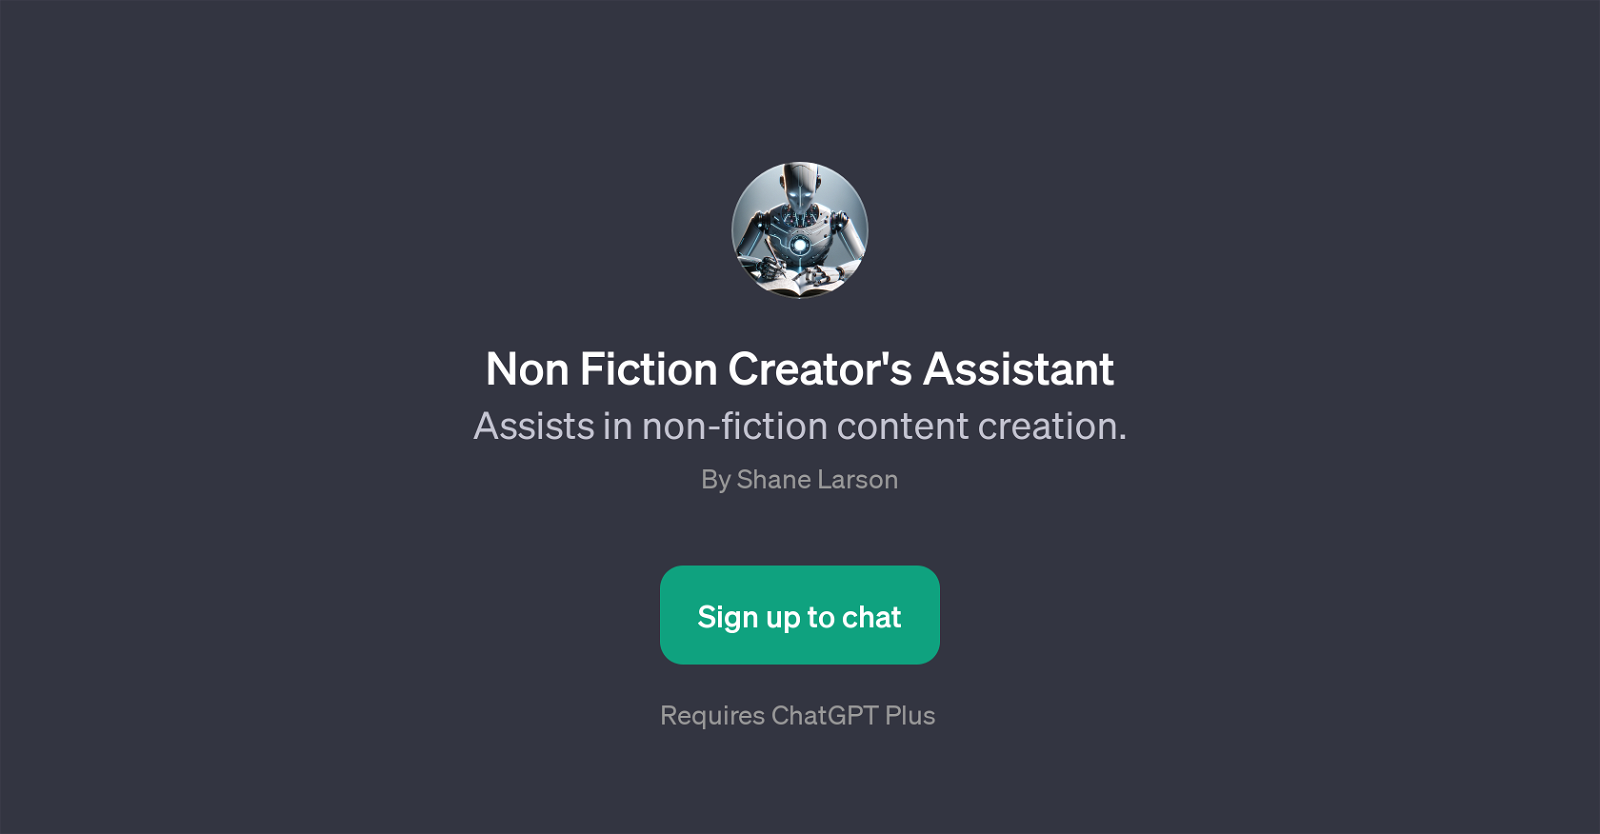 Non Fiction Creator's Assistant website